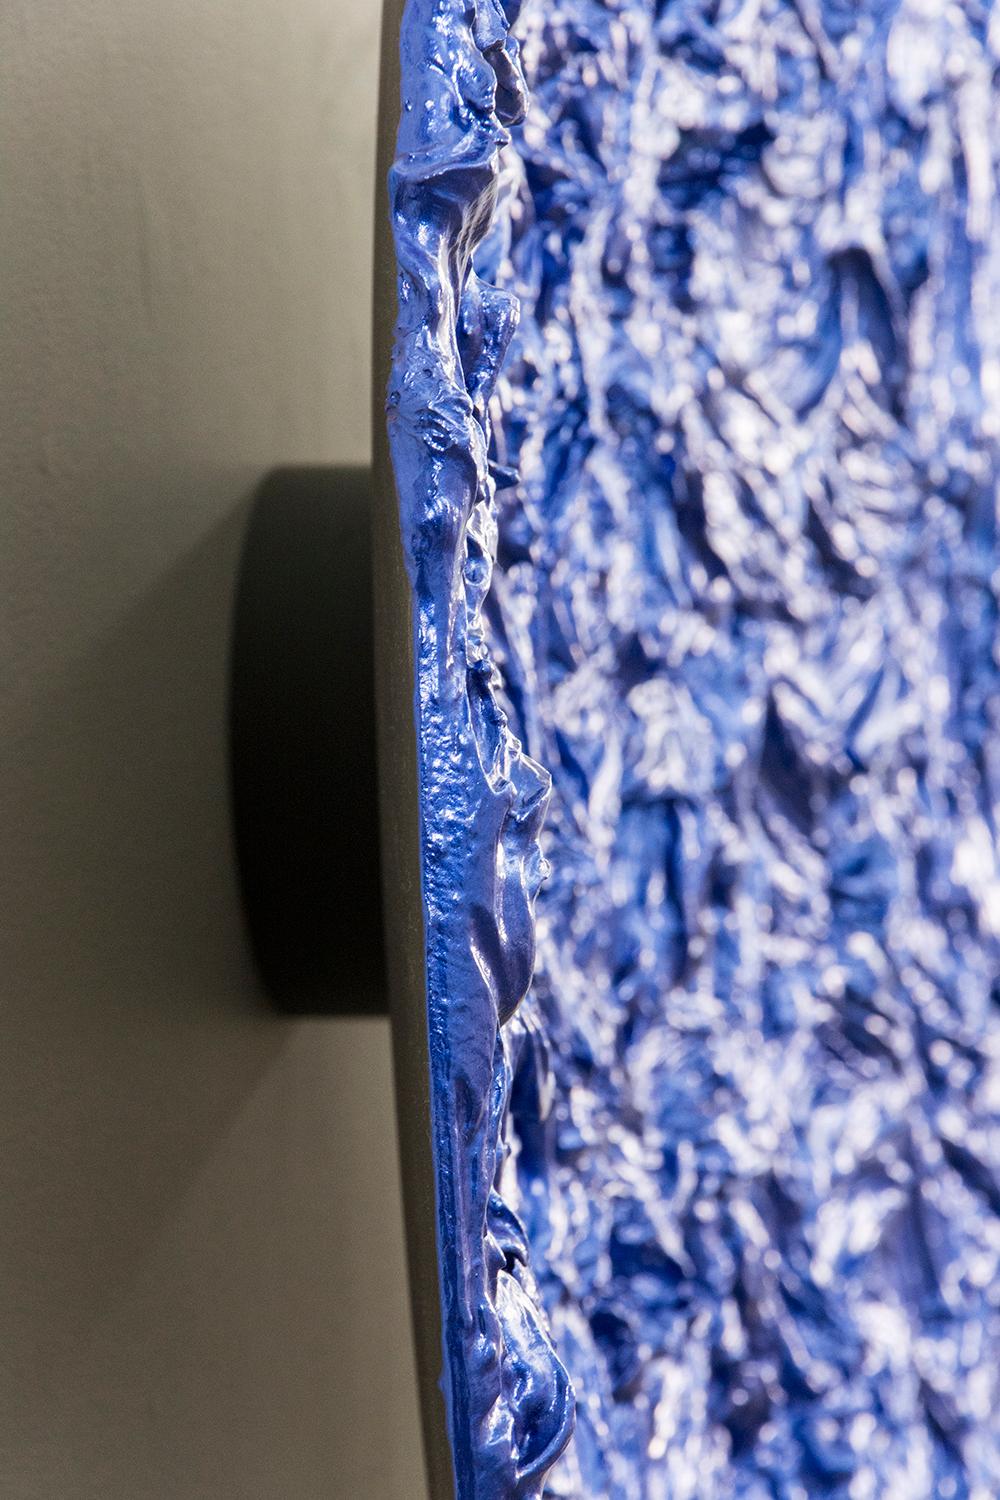 Storm Surge Tondo Kobalt - glänzend, blau, Impasto, abstrakt, Acryl auf Aluminium (Zeitgenössisch), Painting, von Shayne Dark